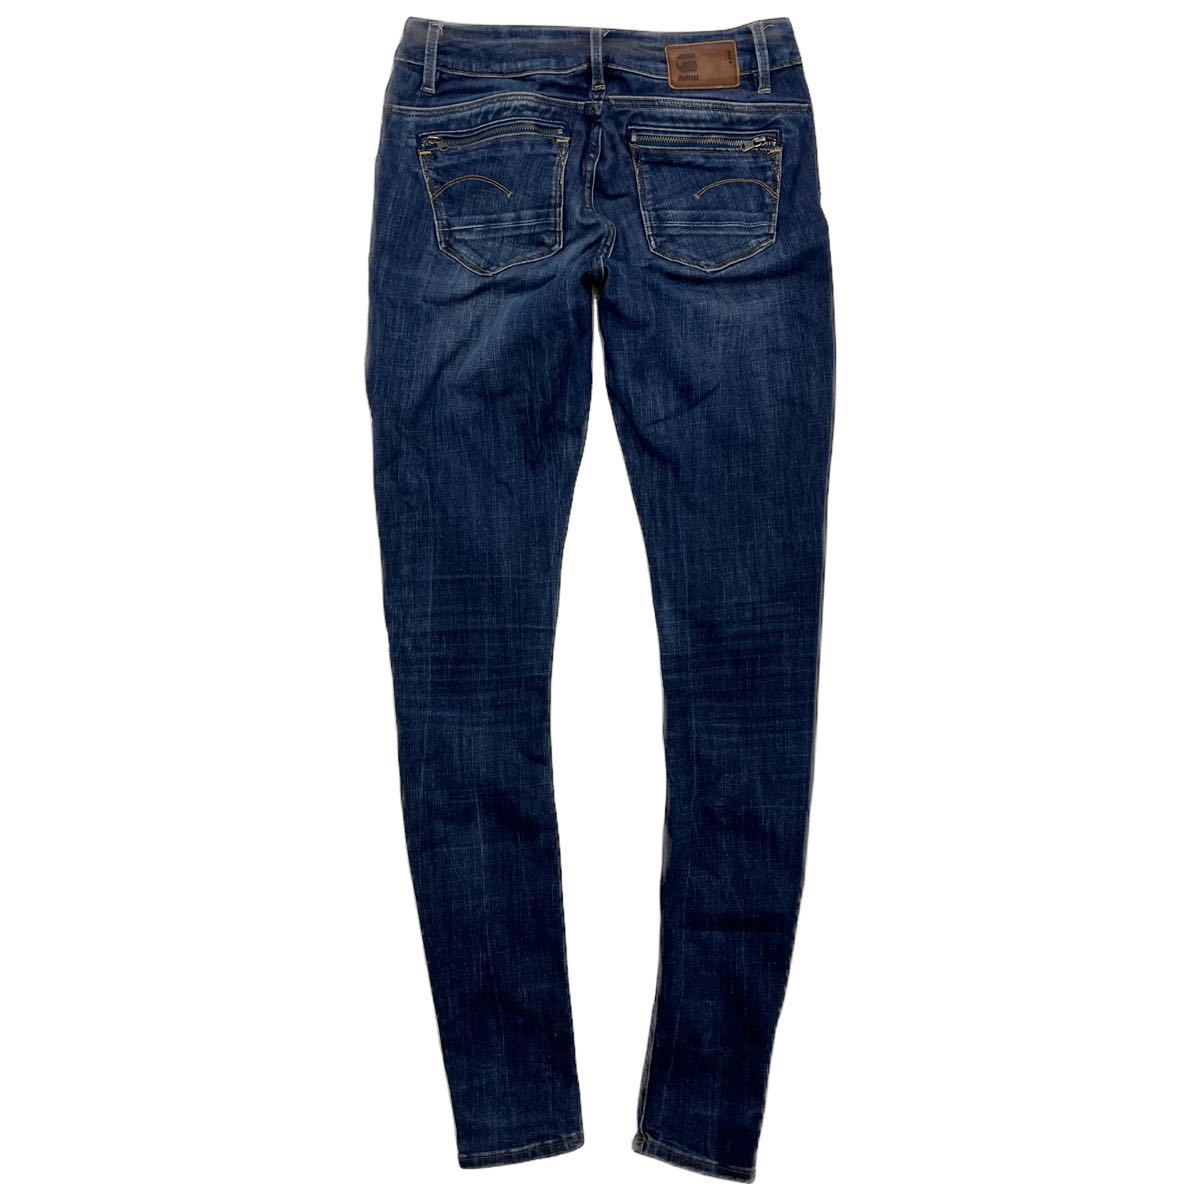 G-STAR RAW * stretch jeans skinny denim pants blue indigo W25 lady's standard casual ji- Star low #Ja6705